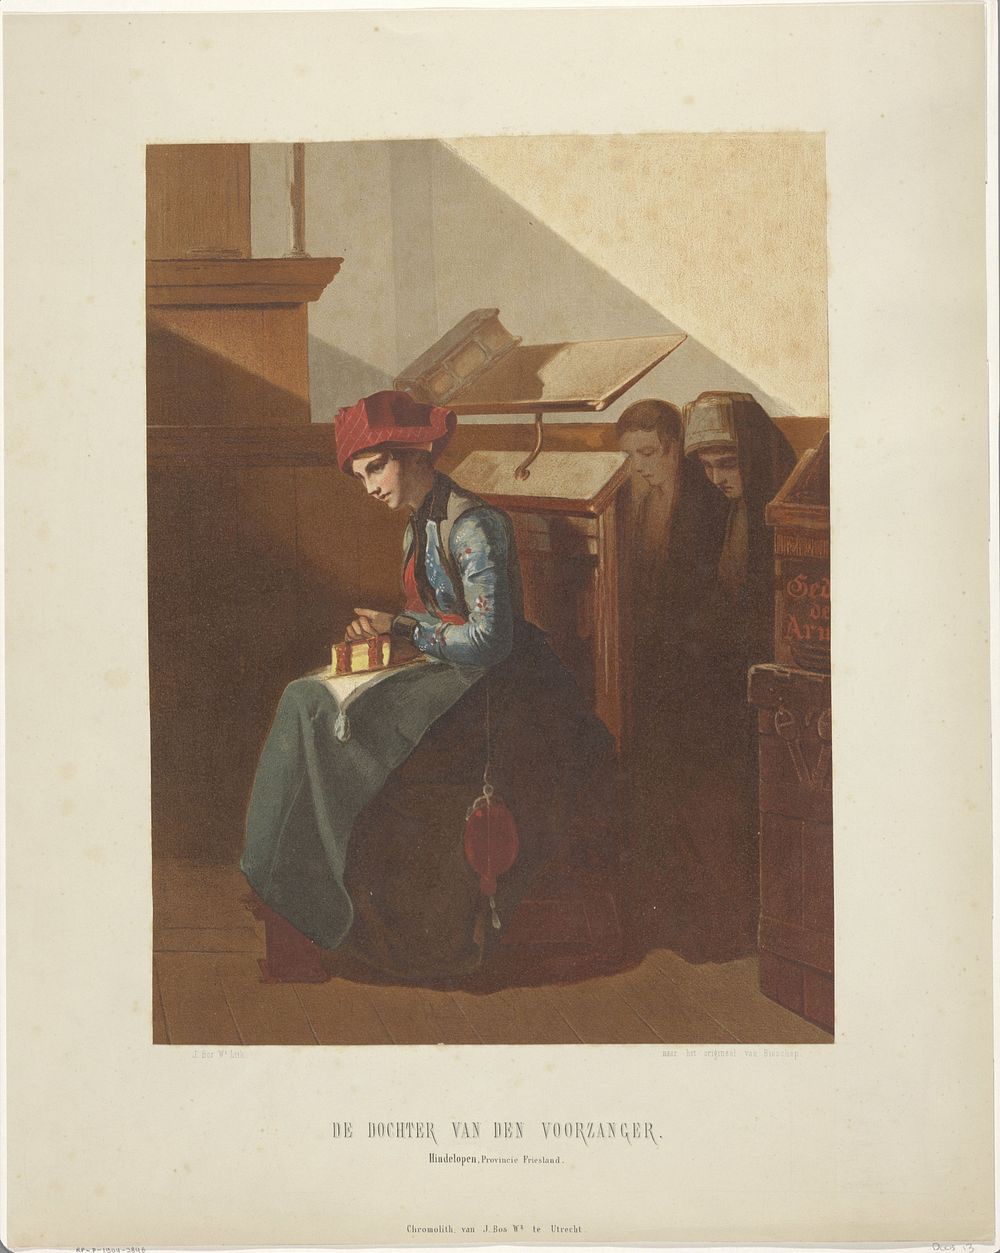 Hindeloopen vrouw in kerkinterieur (1842 - 1897) by Jan Bos Wz and Christoffel Bisschop